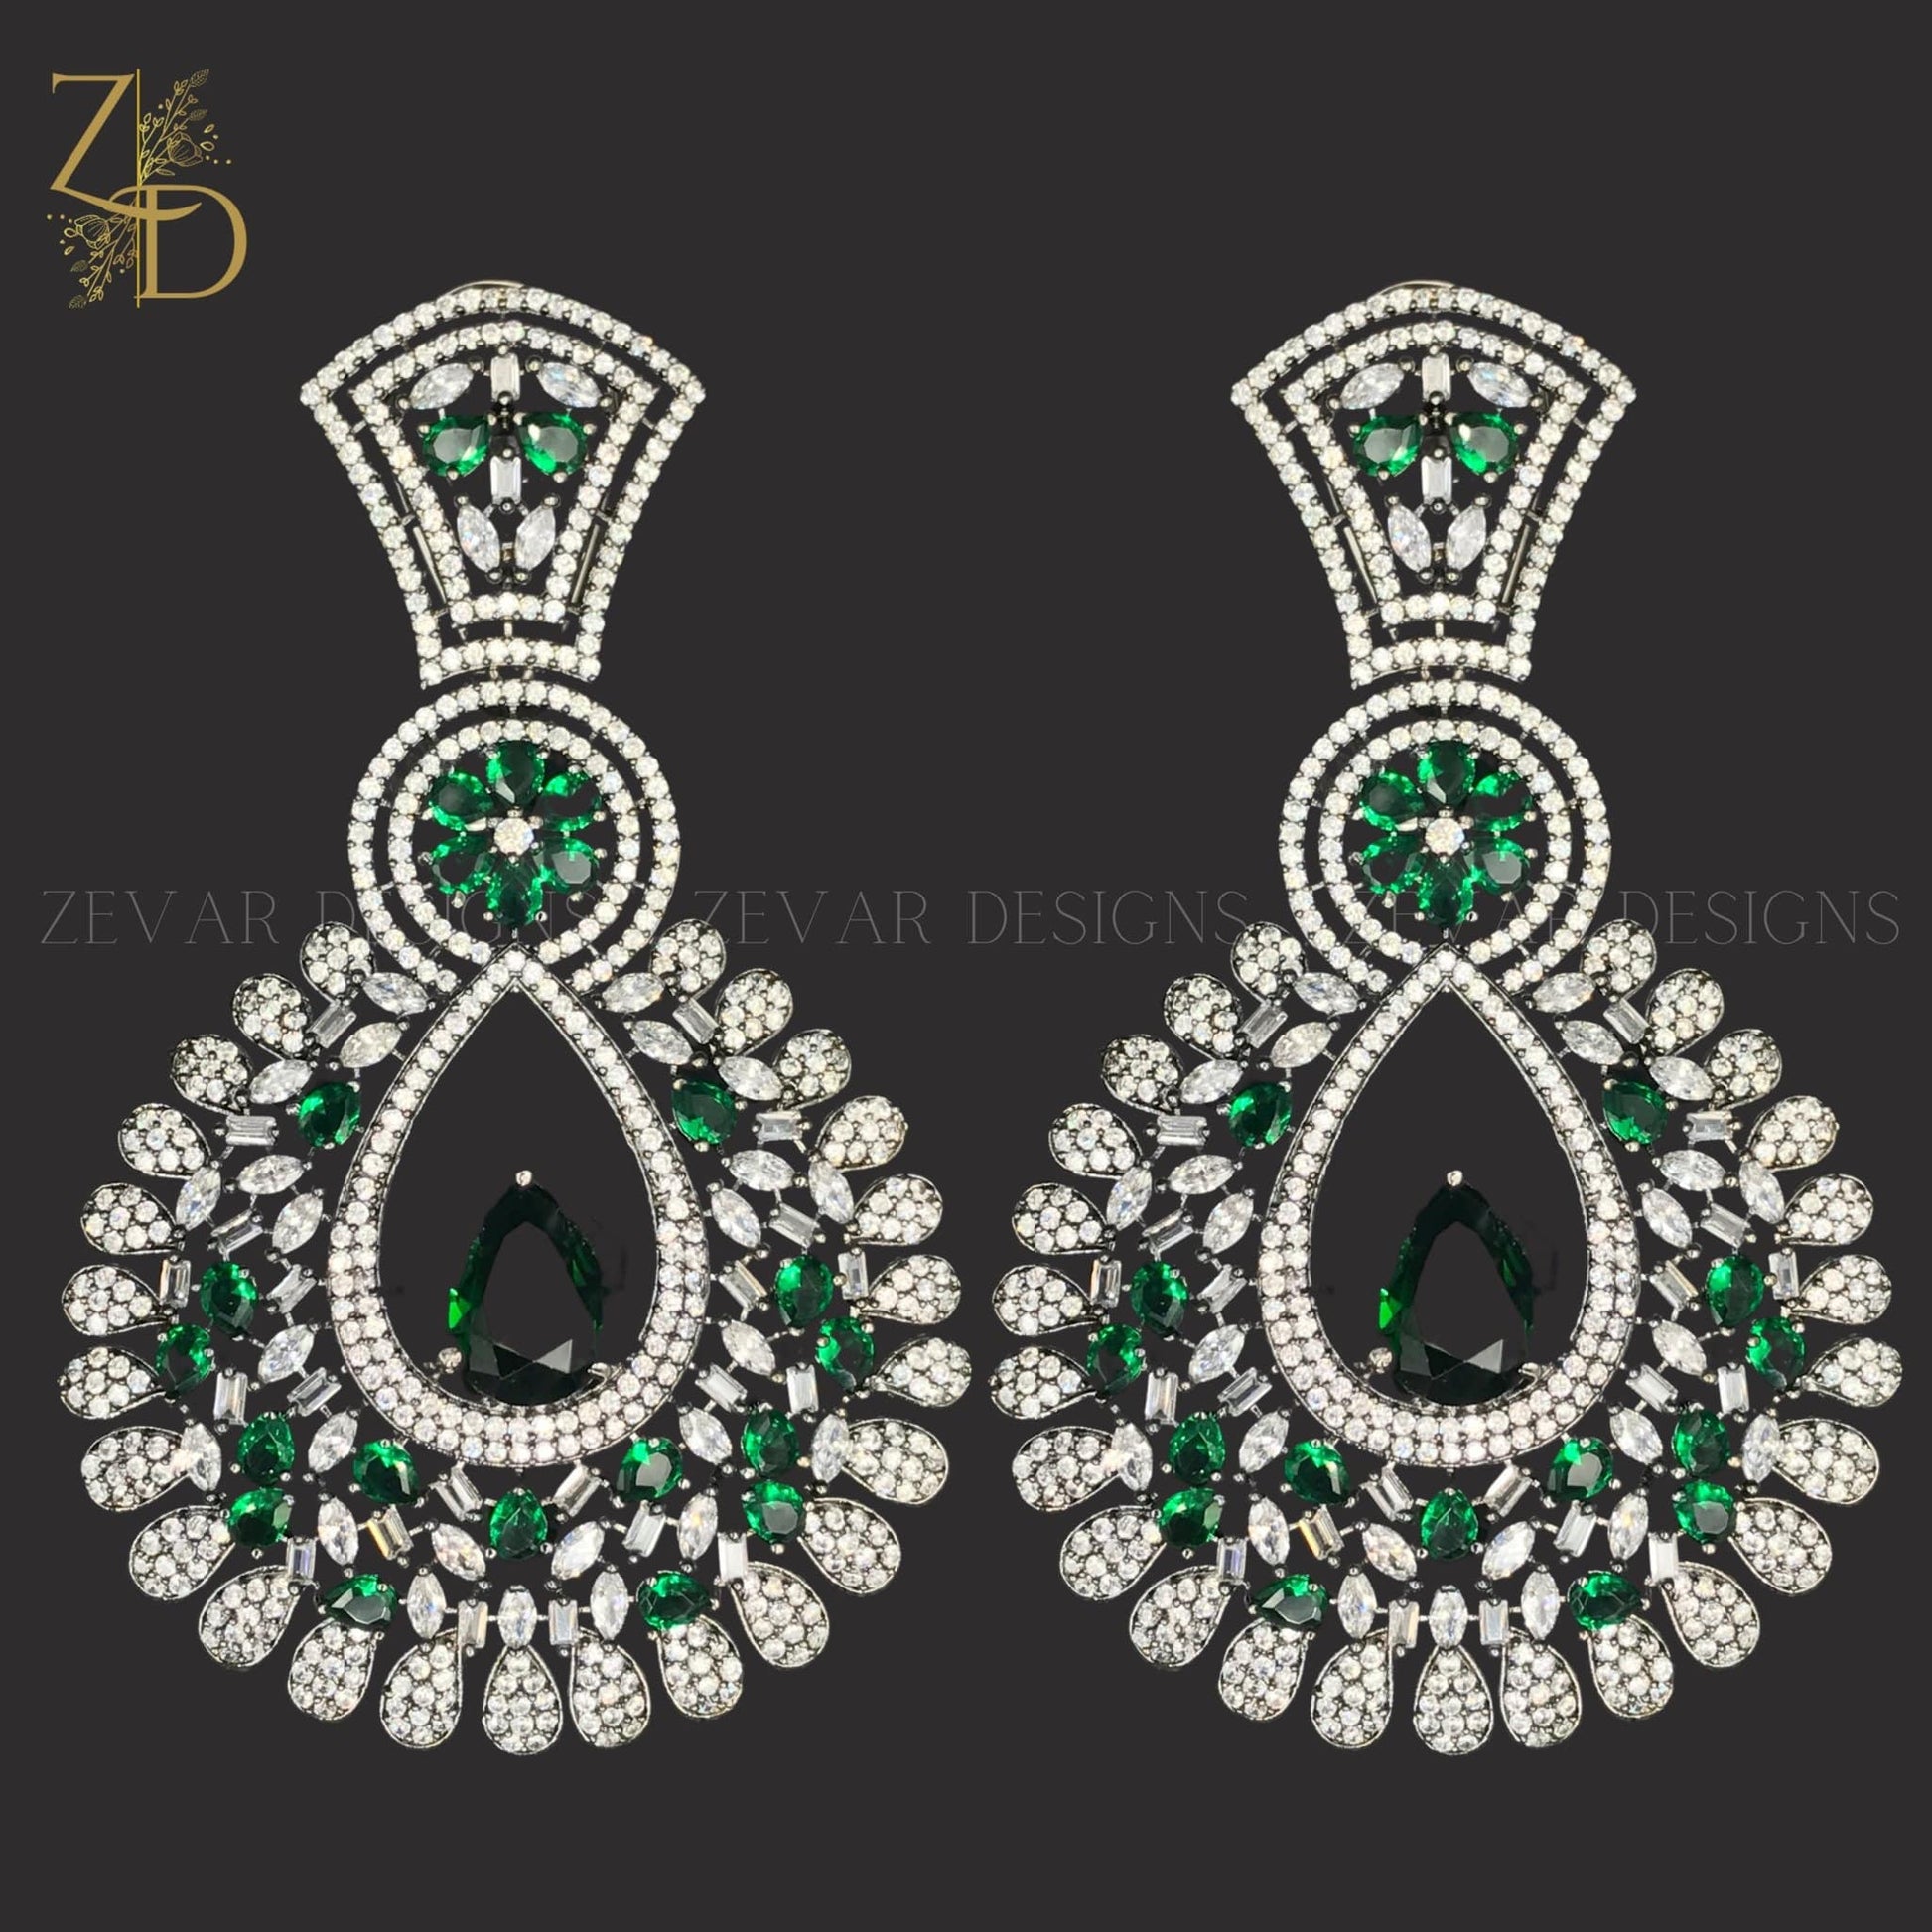 Zevar Designs Zircon Earrings Zircon Earrings - Emerald Green